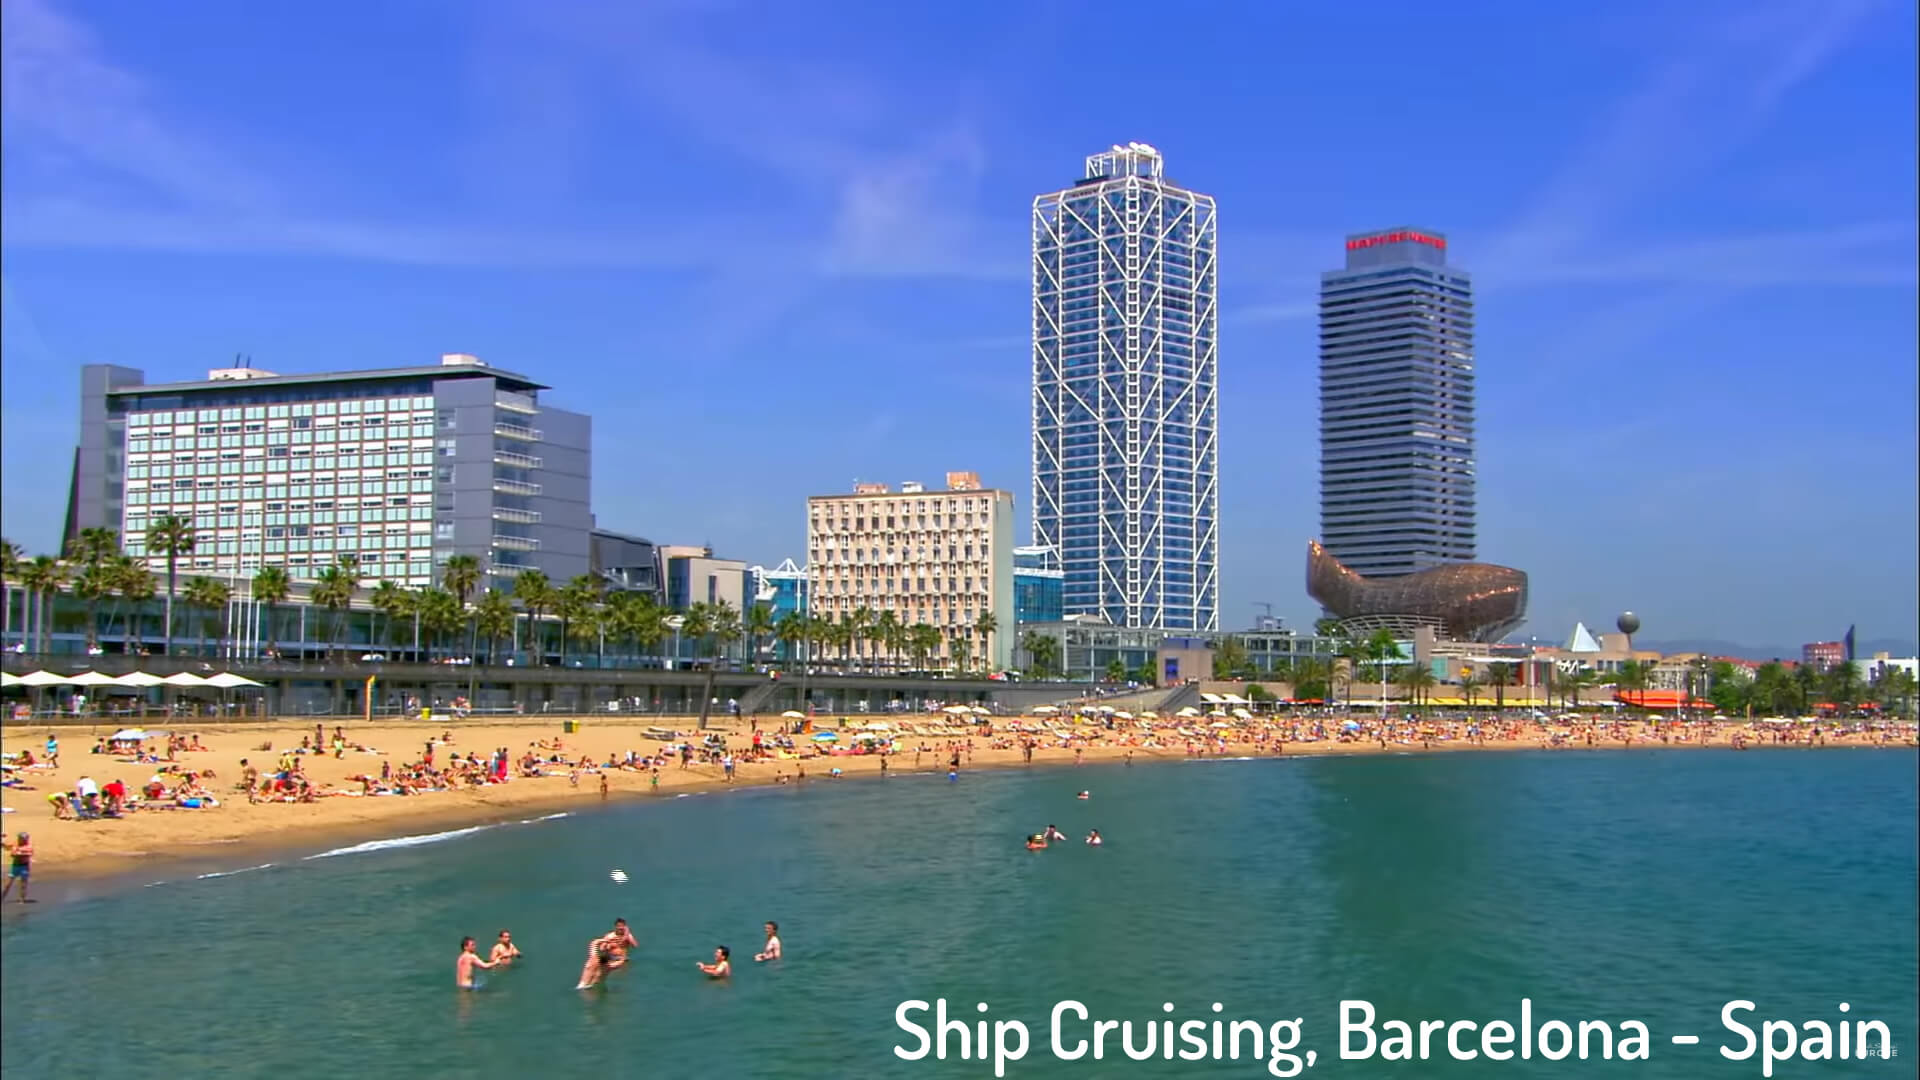 Ship Cruising, Barcelona - Spain